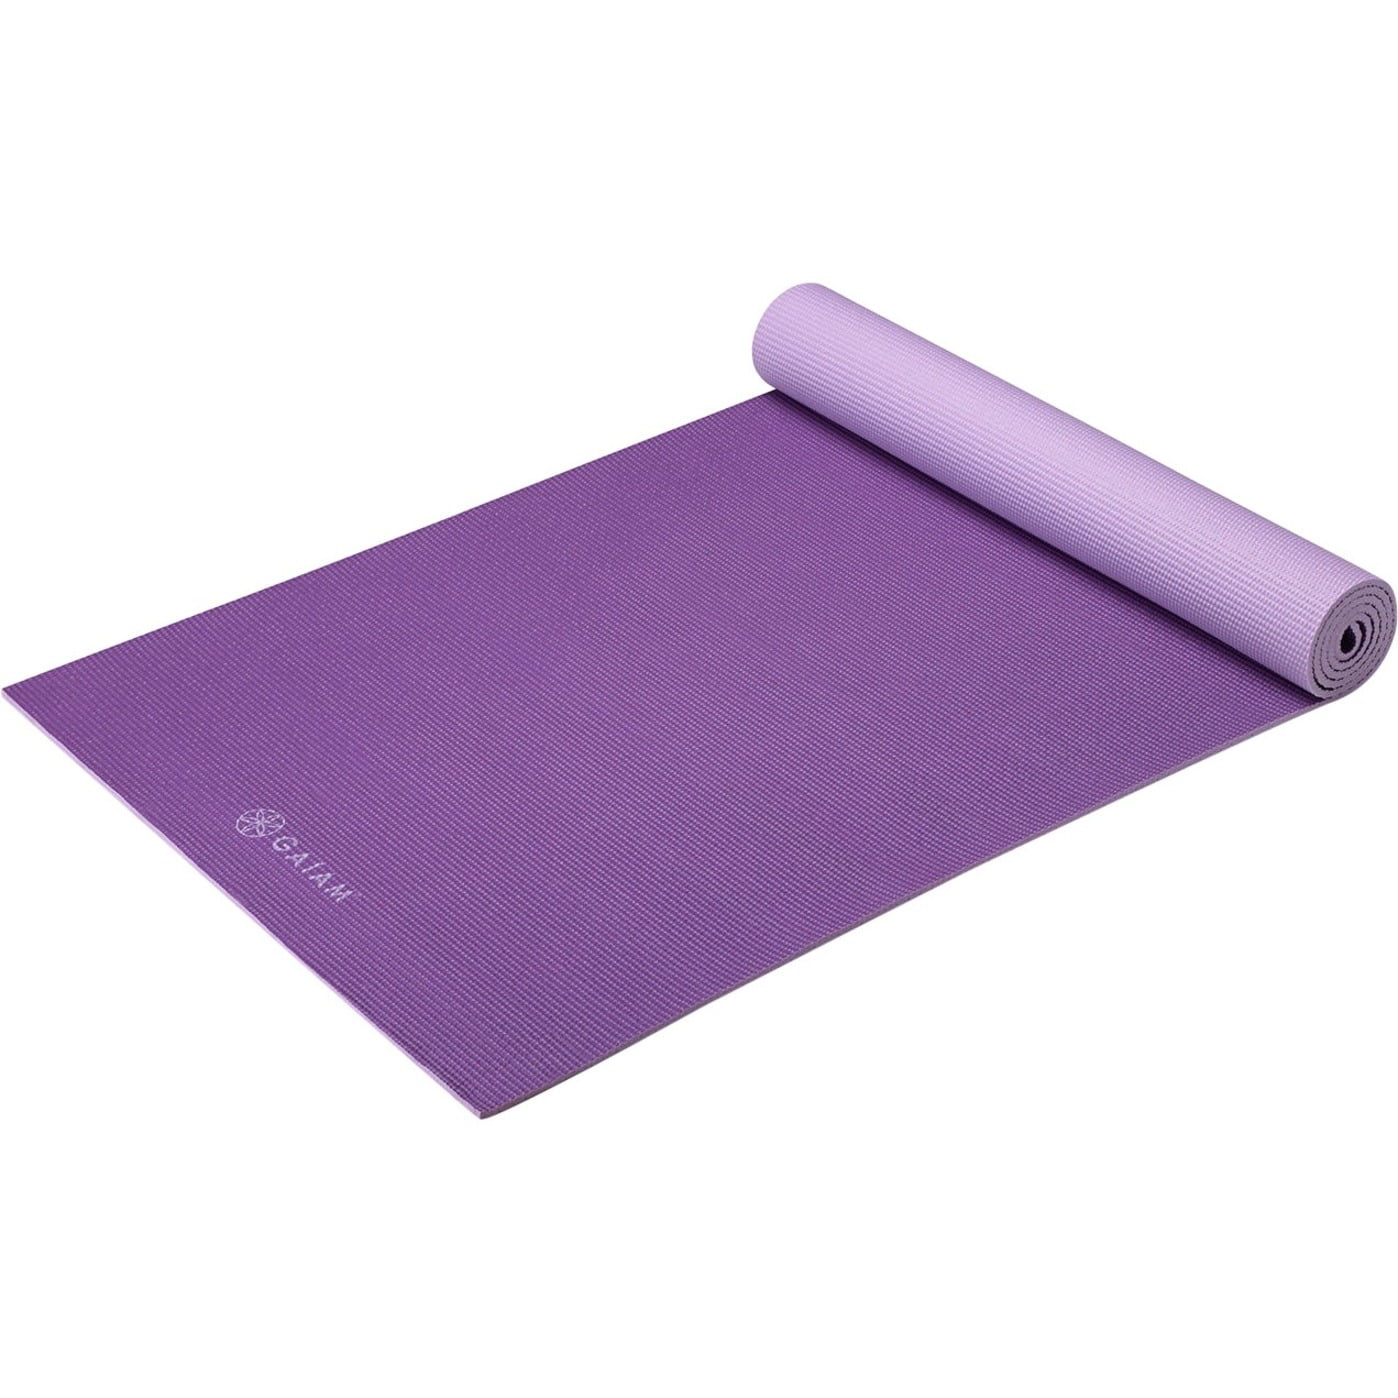 Gaiam Premium 2-Color Yoga Mat, Navy/Blue, 5mm 